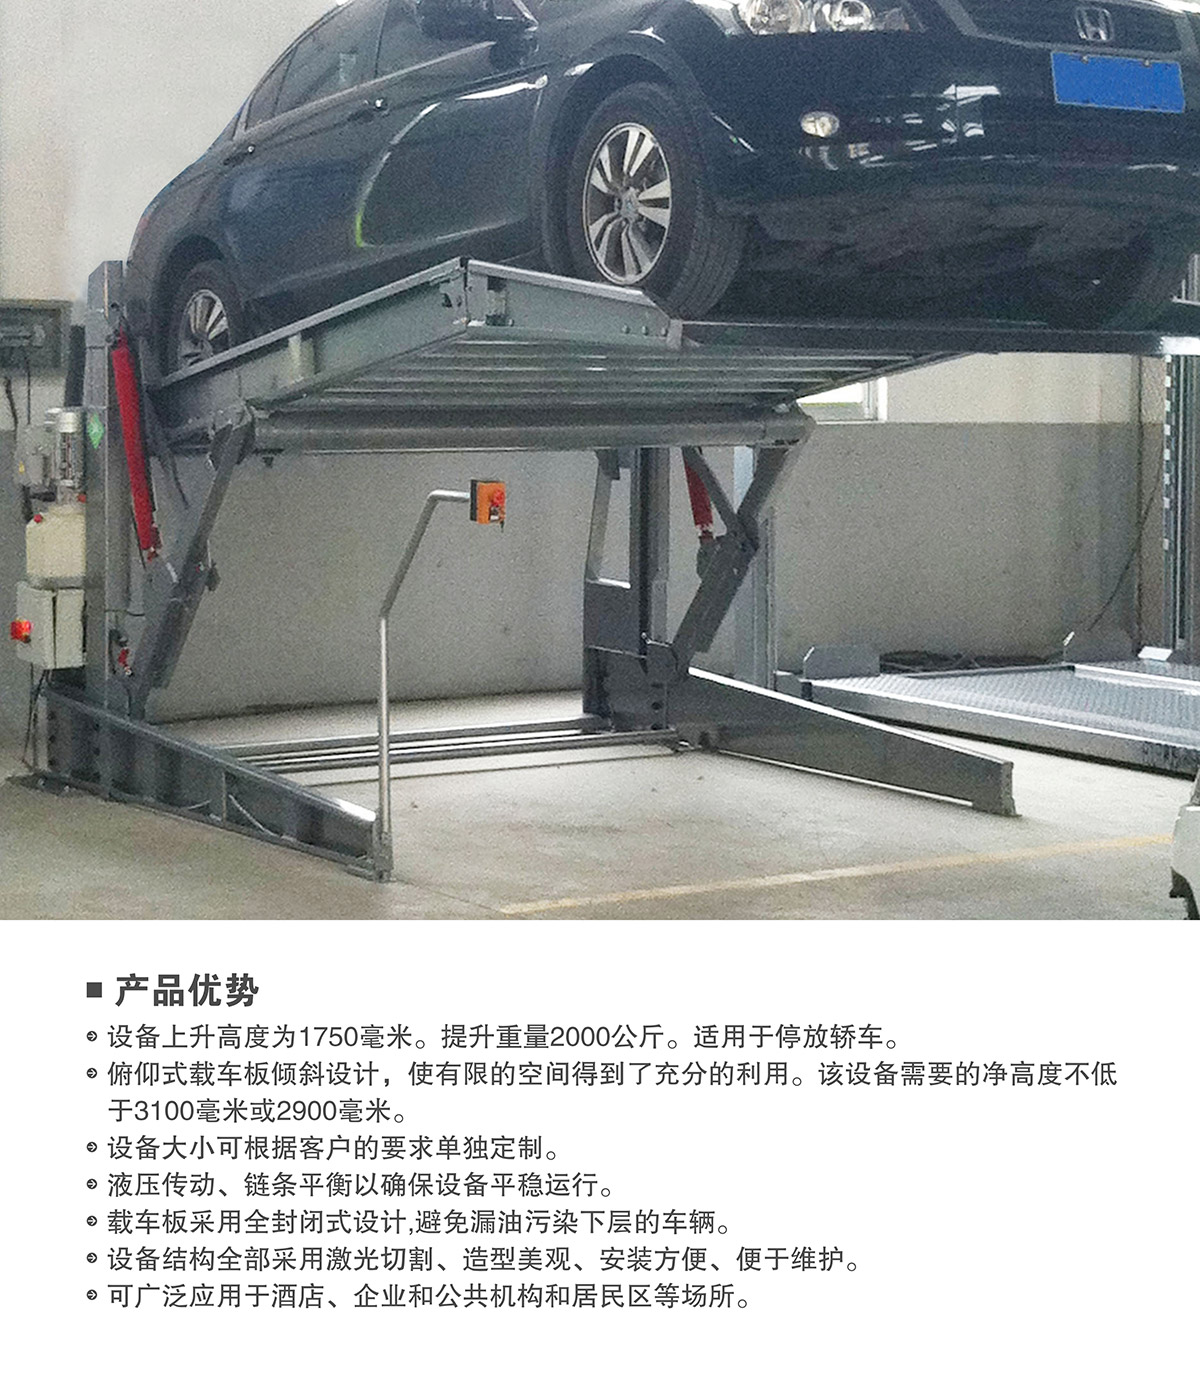 立体车位俯仰式简易升降机械停车设备产品优势.jpg